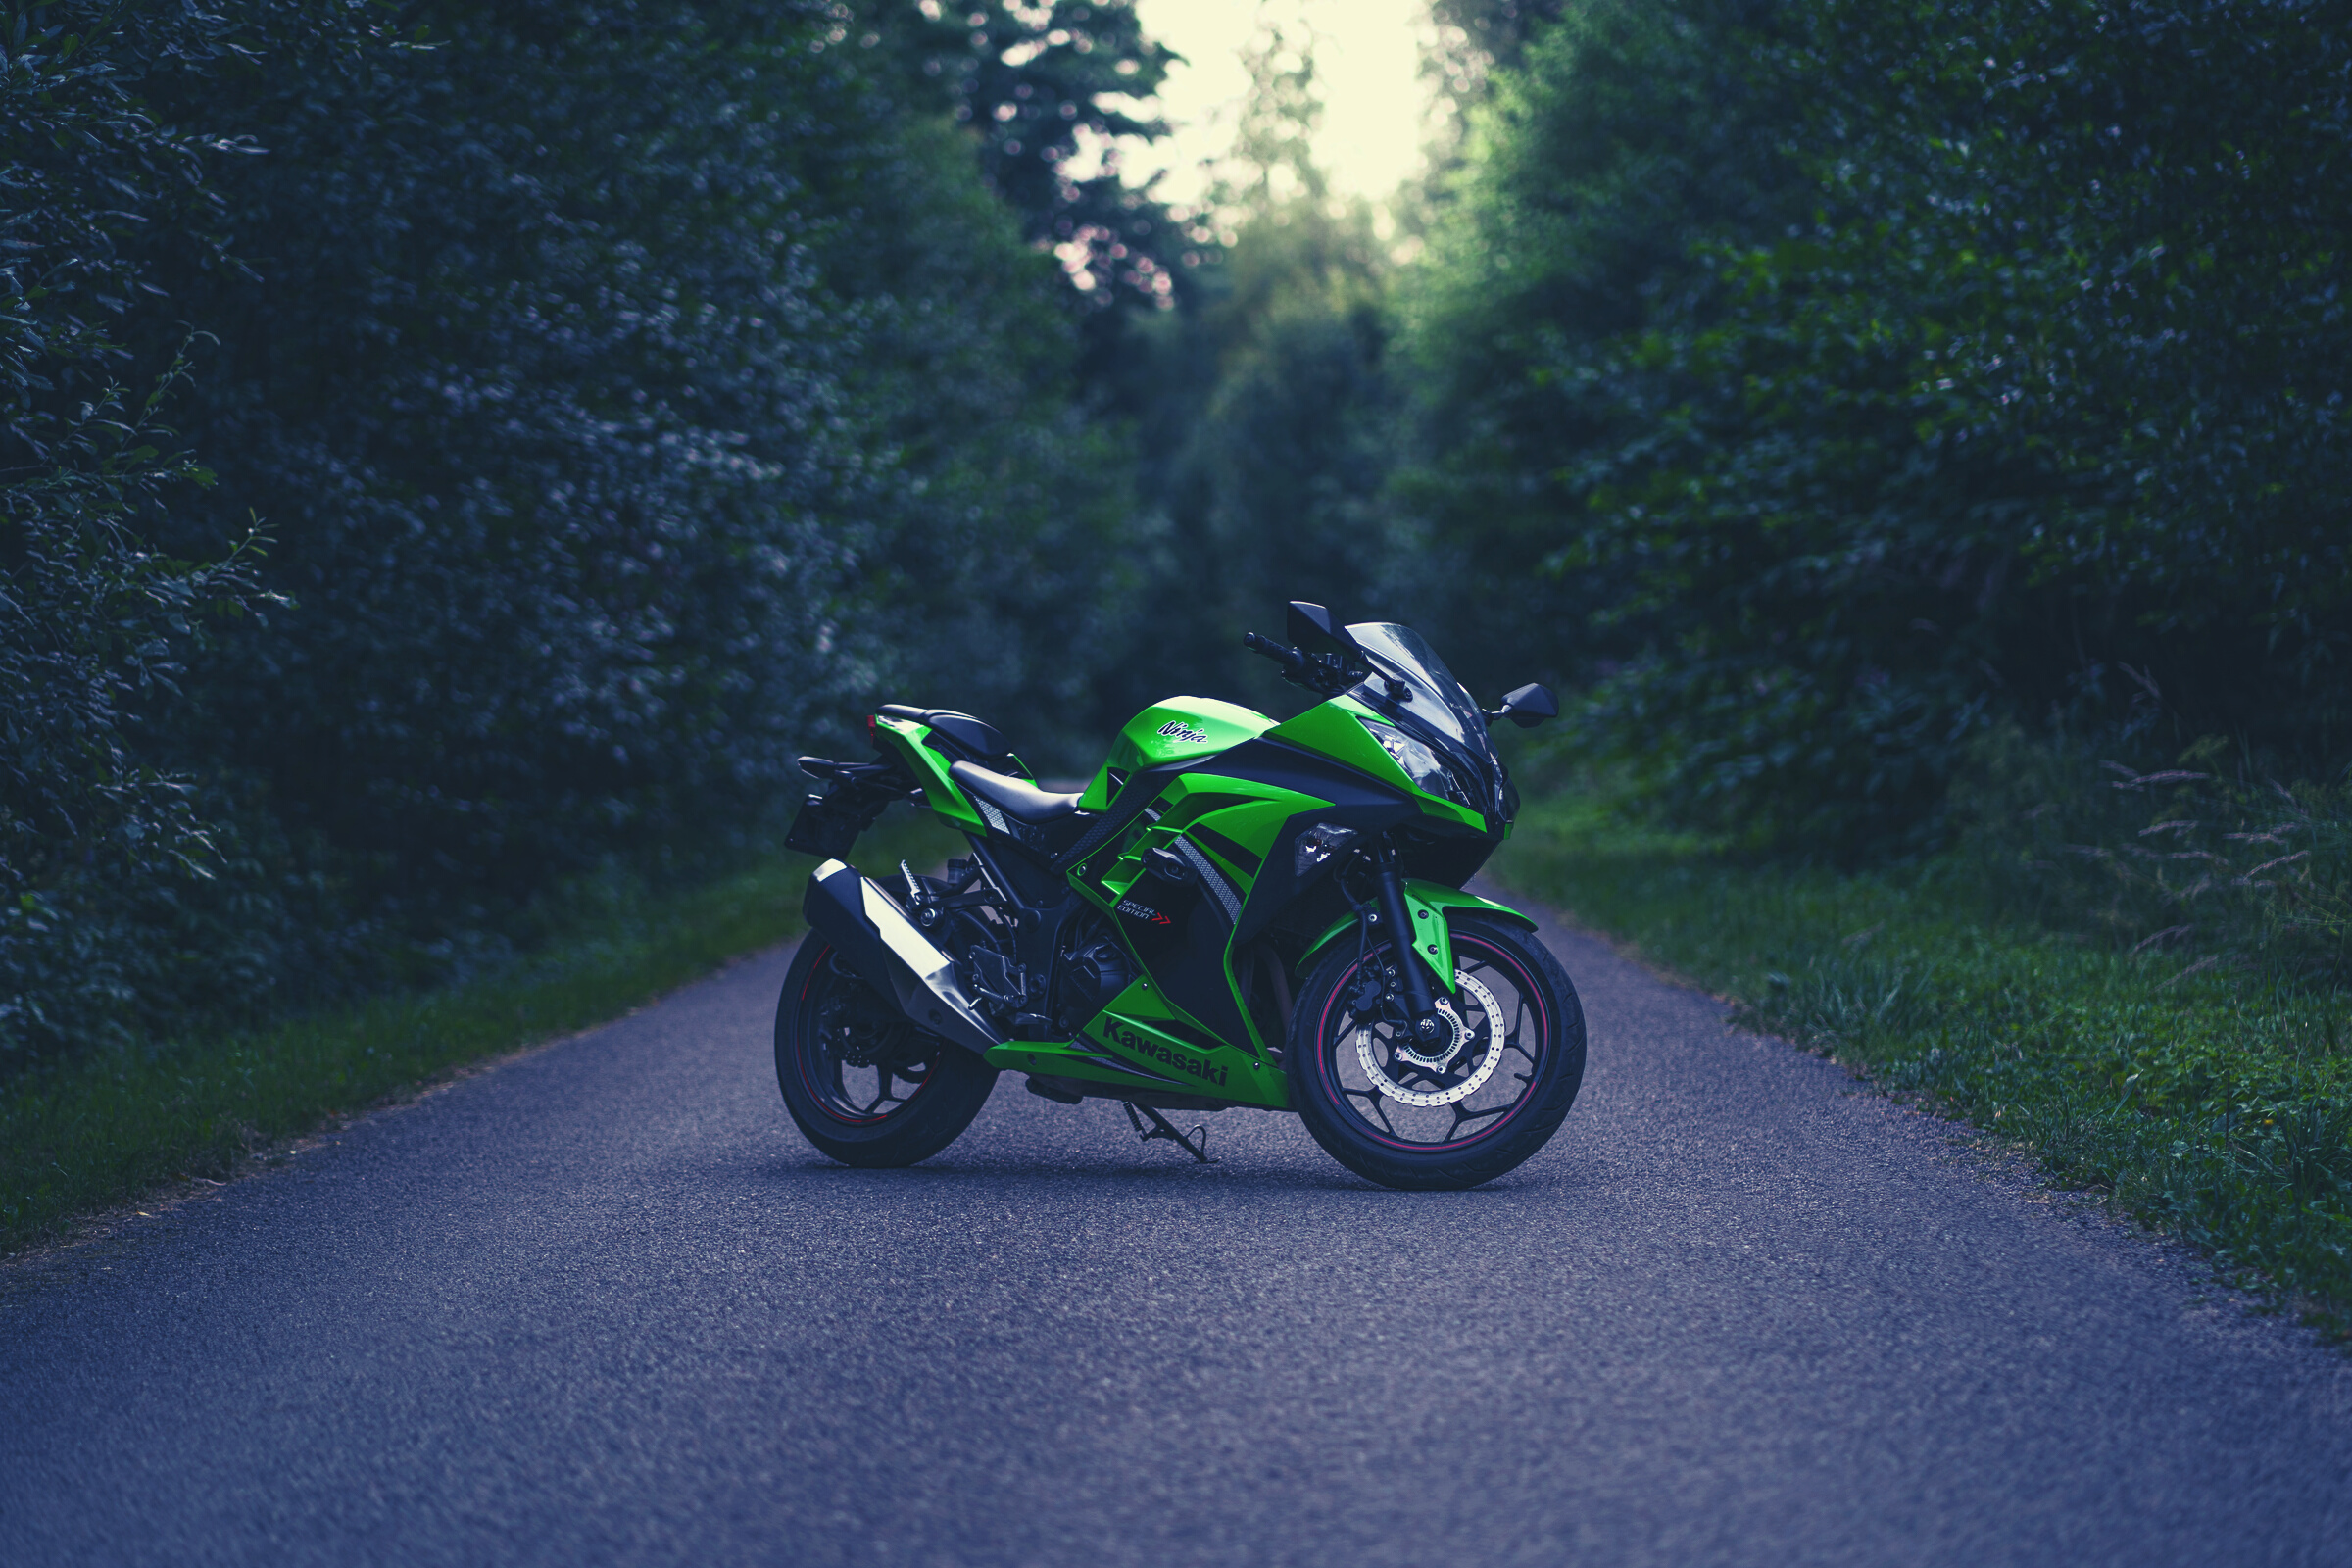 A Green Kawasaki Ninja 